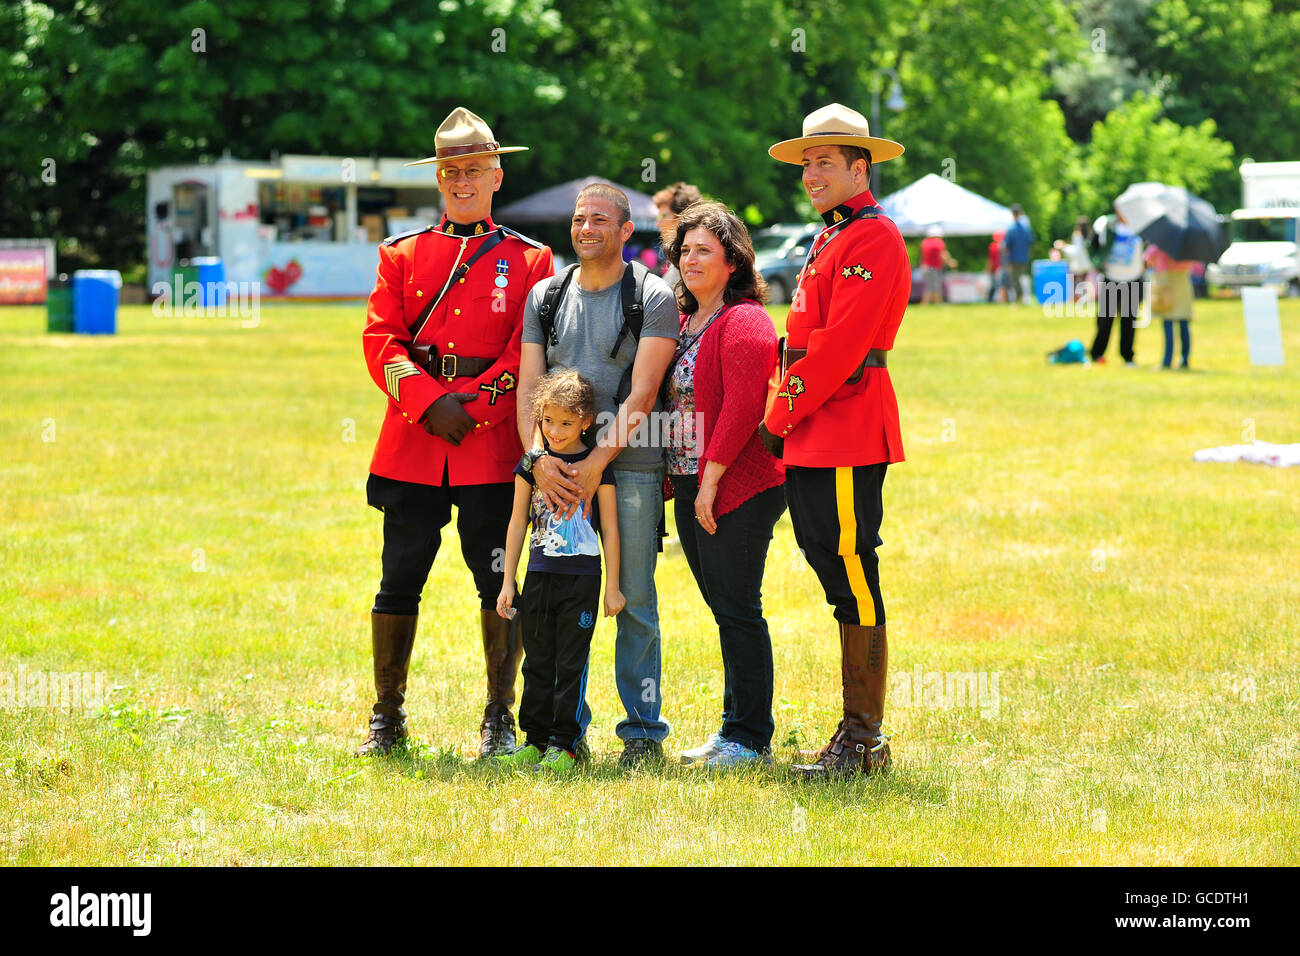 Une famille de poser pour des photos avec deux gendarmes à un festival de la fête du Canada à London, en Ontario. Banque D'Images